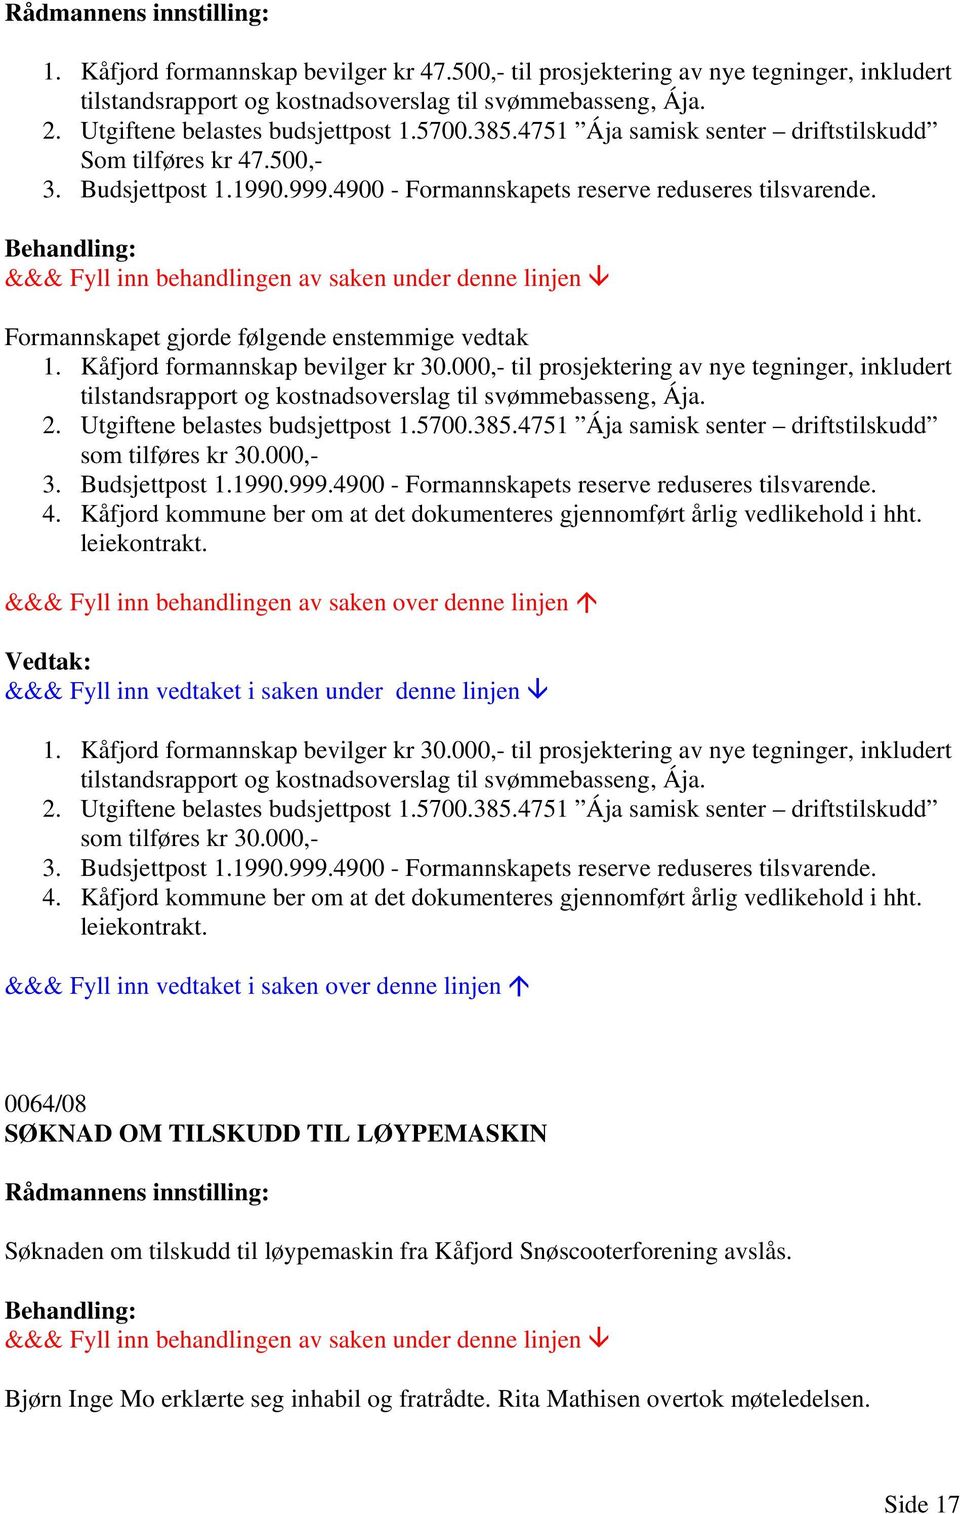 Kåfjord formannskap bevilger kr 30.000,- til prosjektering av nye tegninger, inkludert tilstandsrapport og kostnadsoverslag til svømmebasseng, Ája. 2. Utgiftene belastes budsjettpost 1.5700.385.